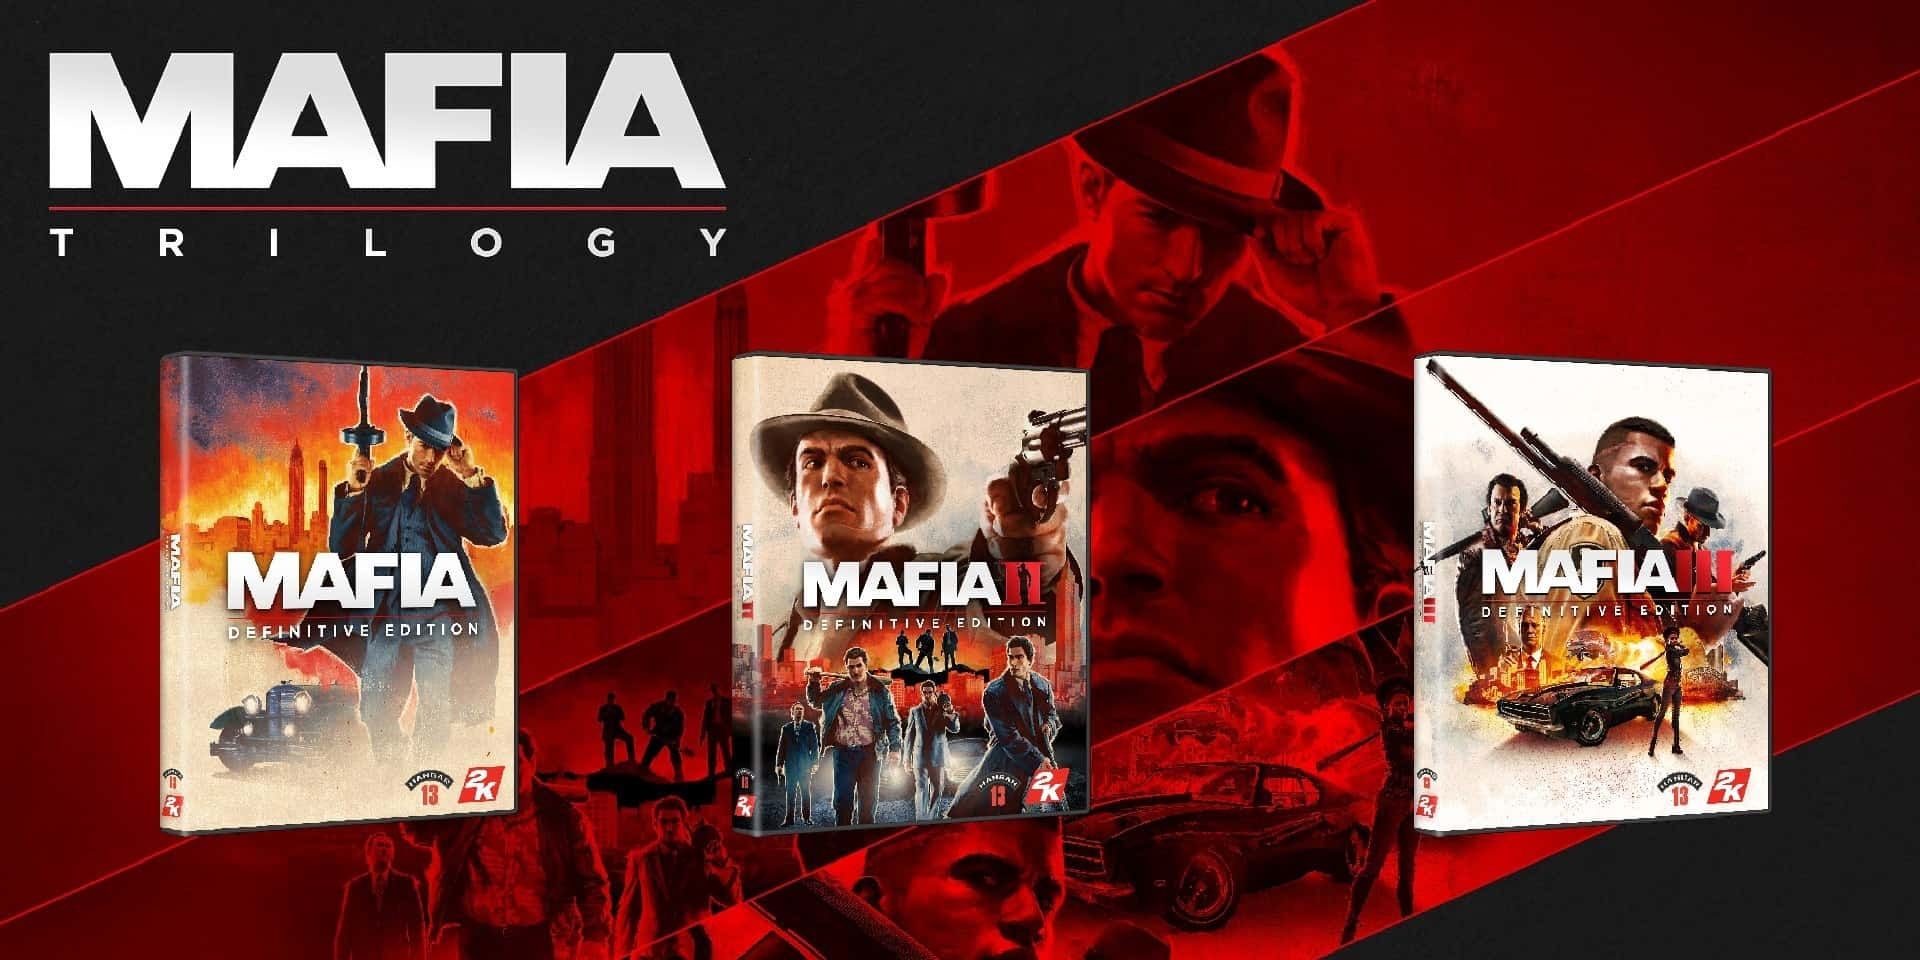 i finnaly got the mafia trilogy : r/MafiaTheGame